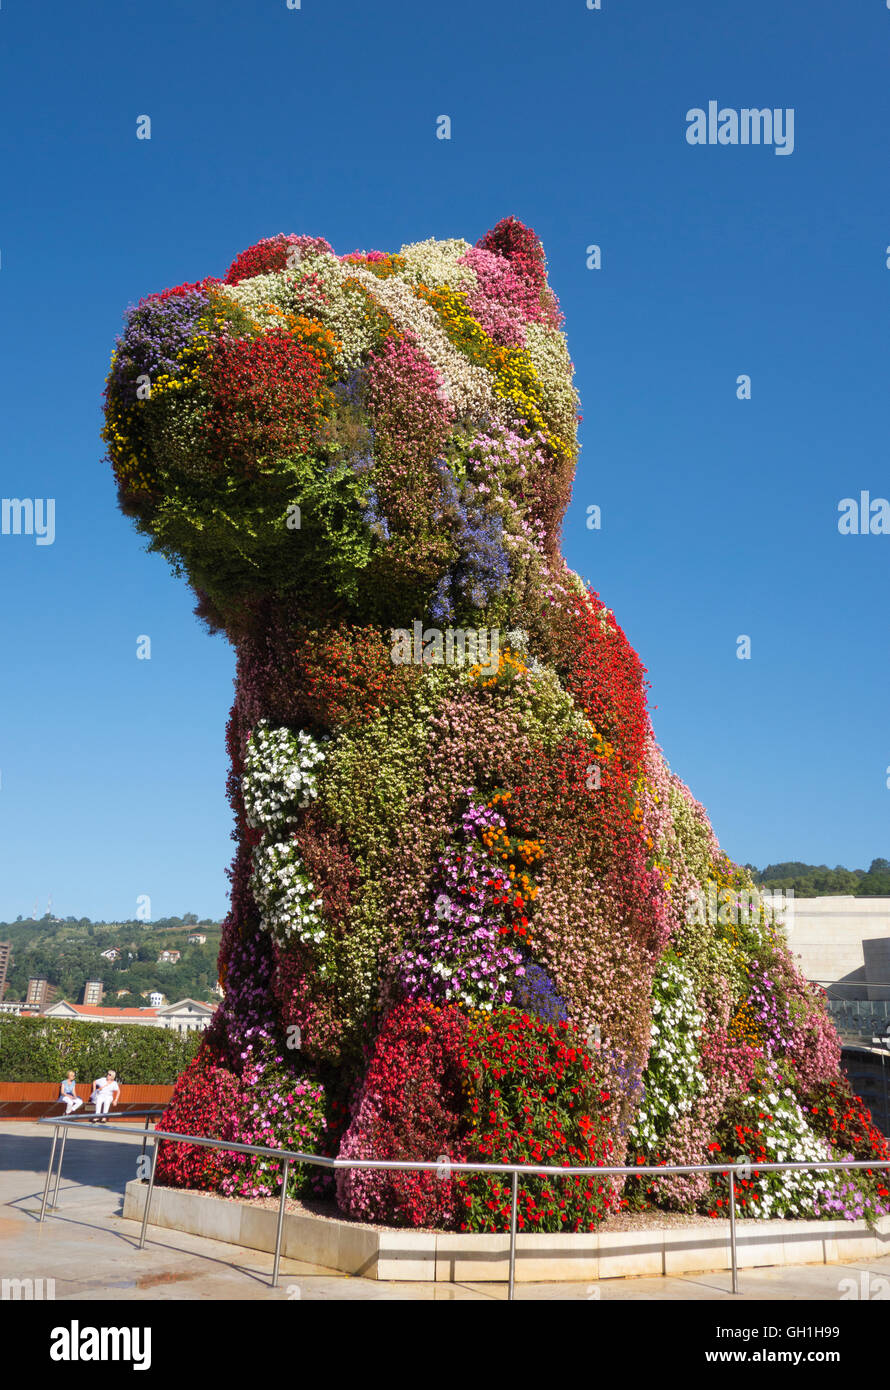 Jeff Koons 'Puppy' - the mascot of Guggenheim Museum, Bilbao Spain Stock Photo